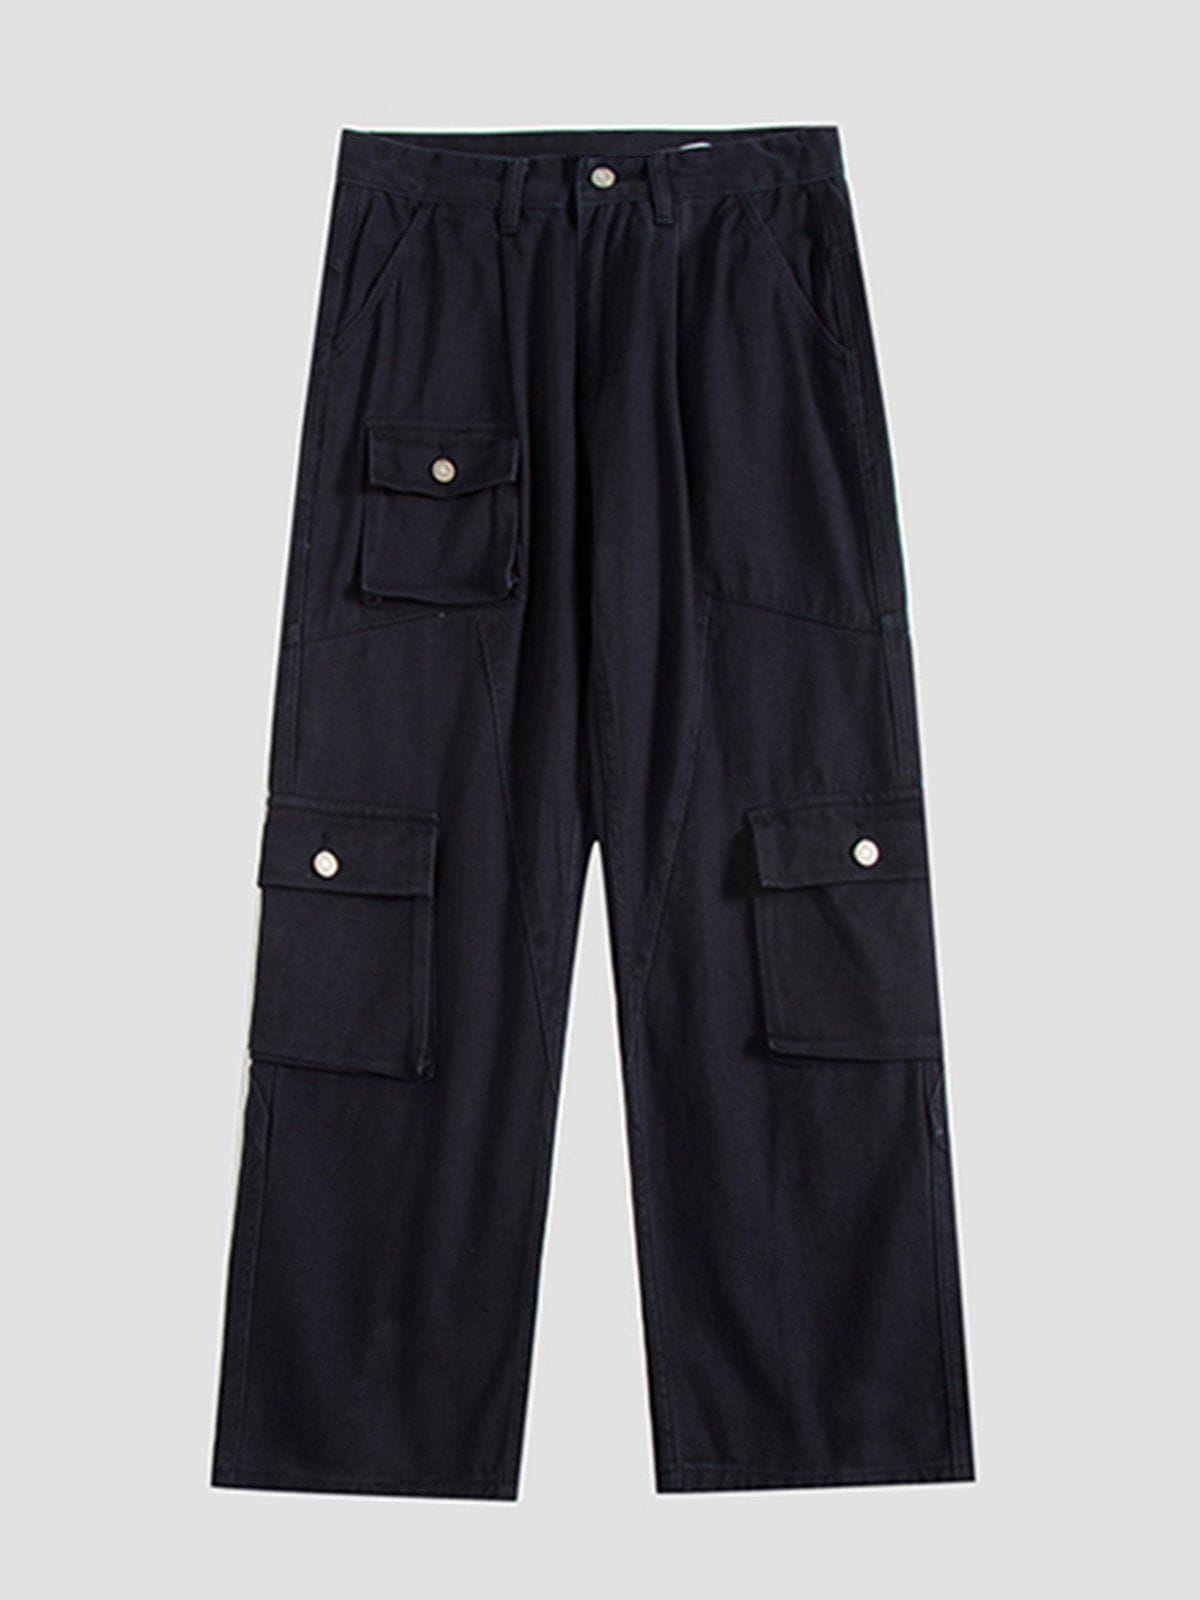 Eprezzy® - Large Pockets Cargo Pants Streetwear Fashion - eprezzy.com